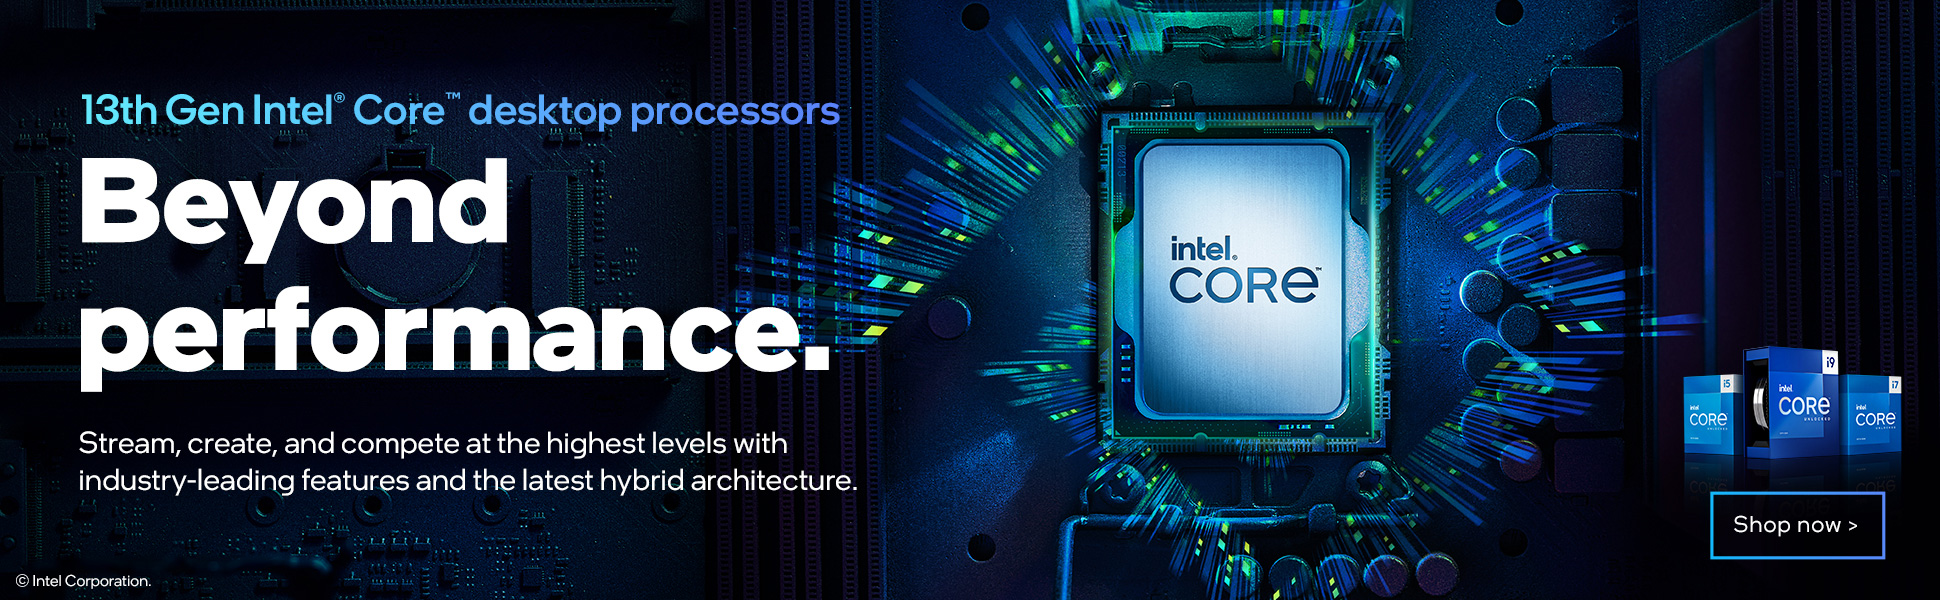 13th Gen Intel® Core™ Desktop Processors